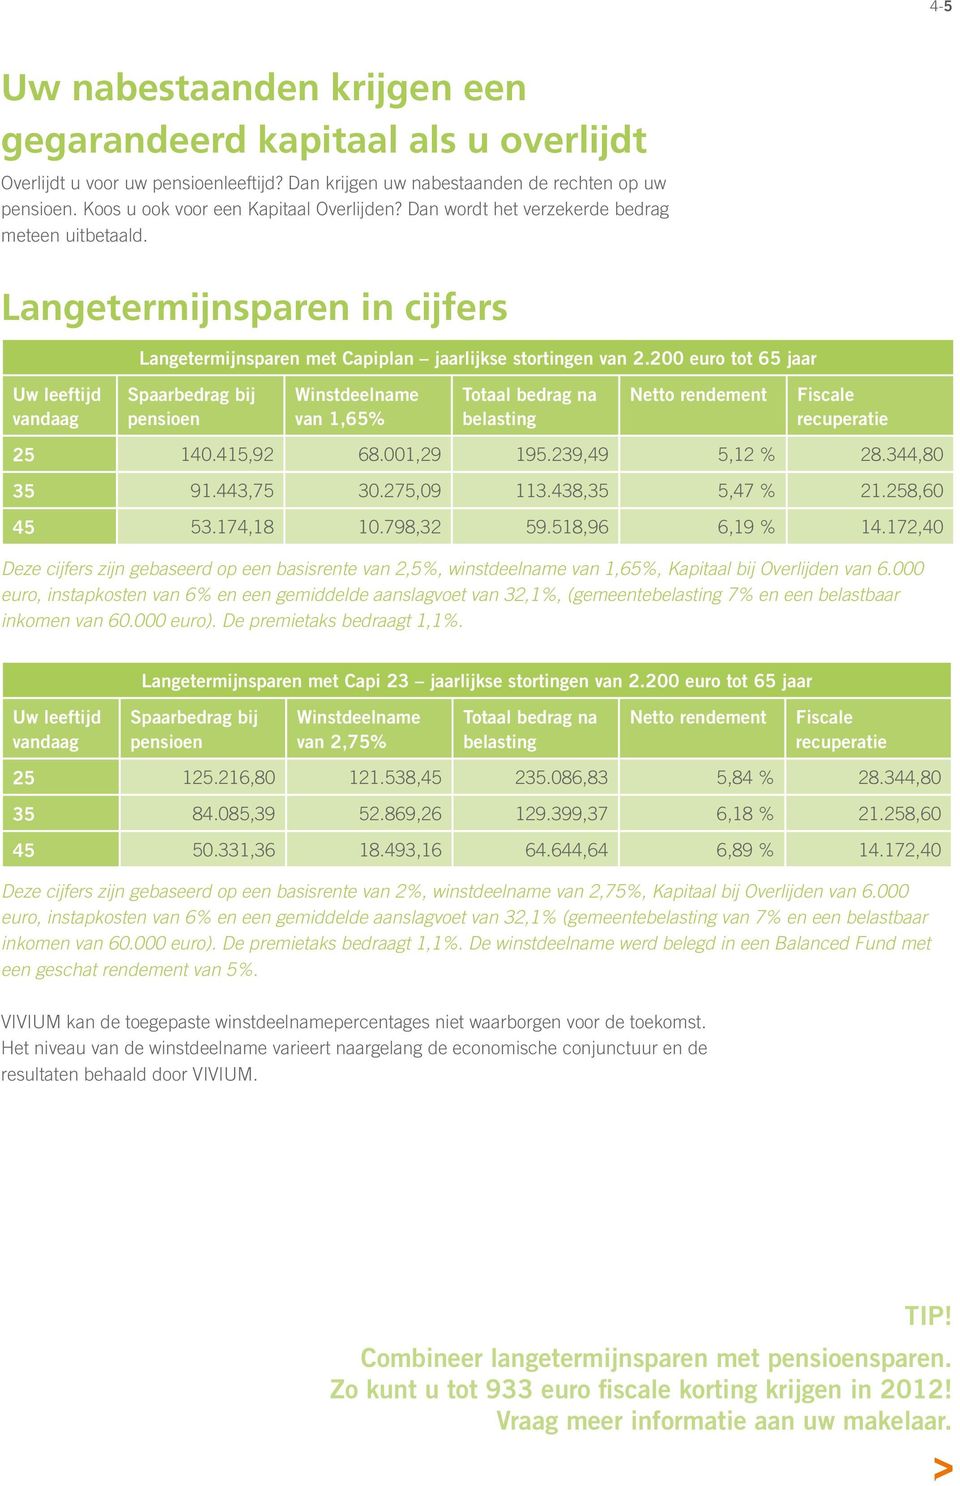 Langetermijnsparen in cijfers Uw leeftijd vandaag Langetermijnsparen met Capiplan jaarlijkse stortingen van 2.